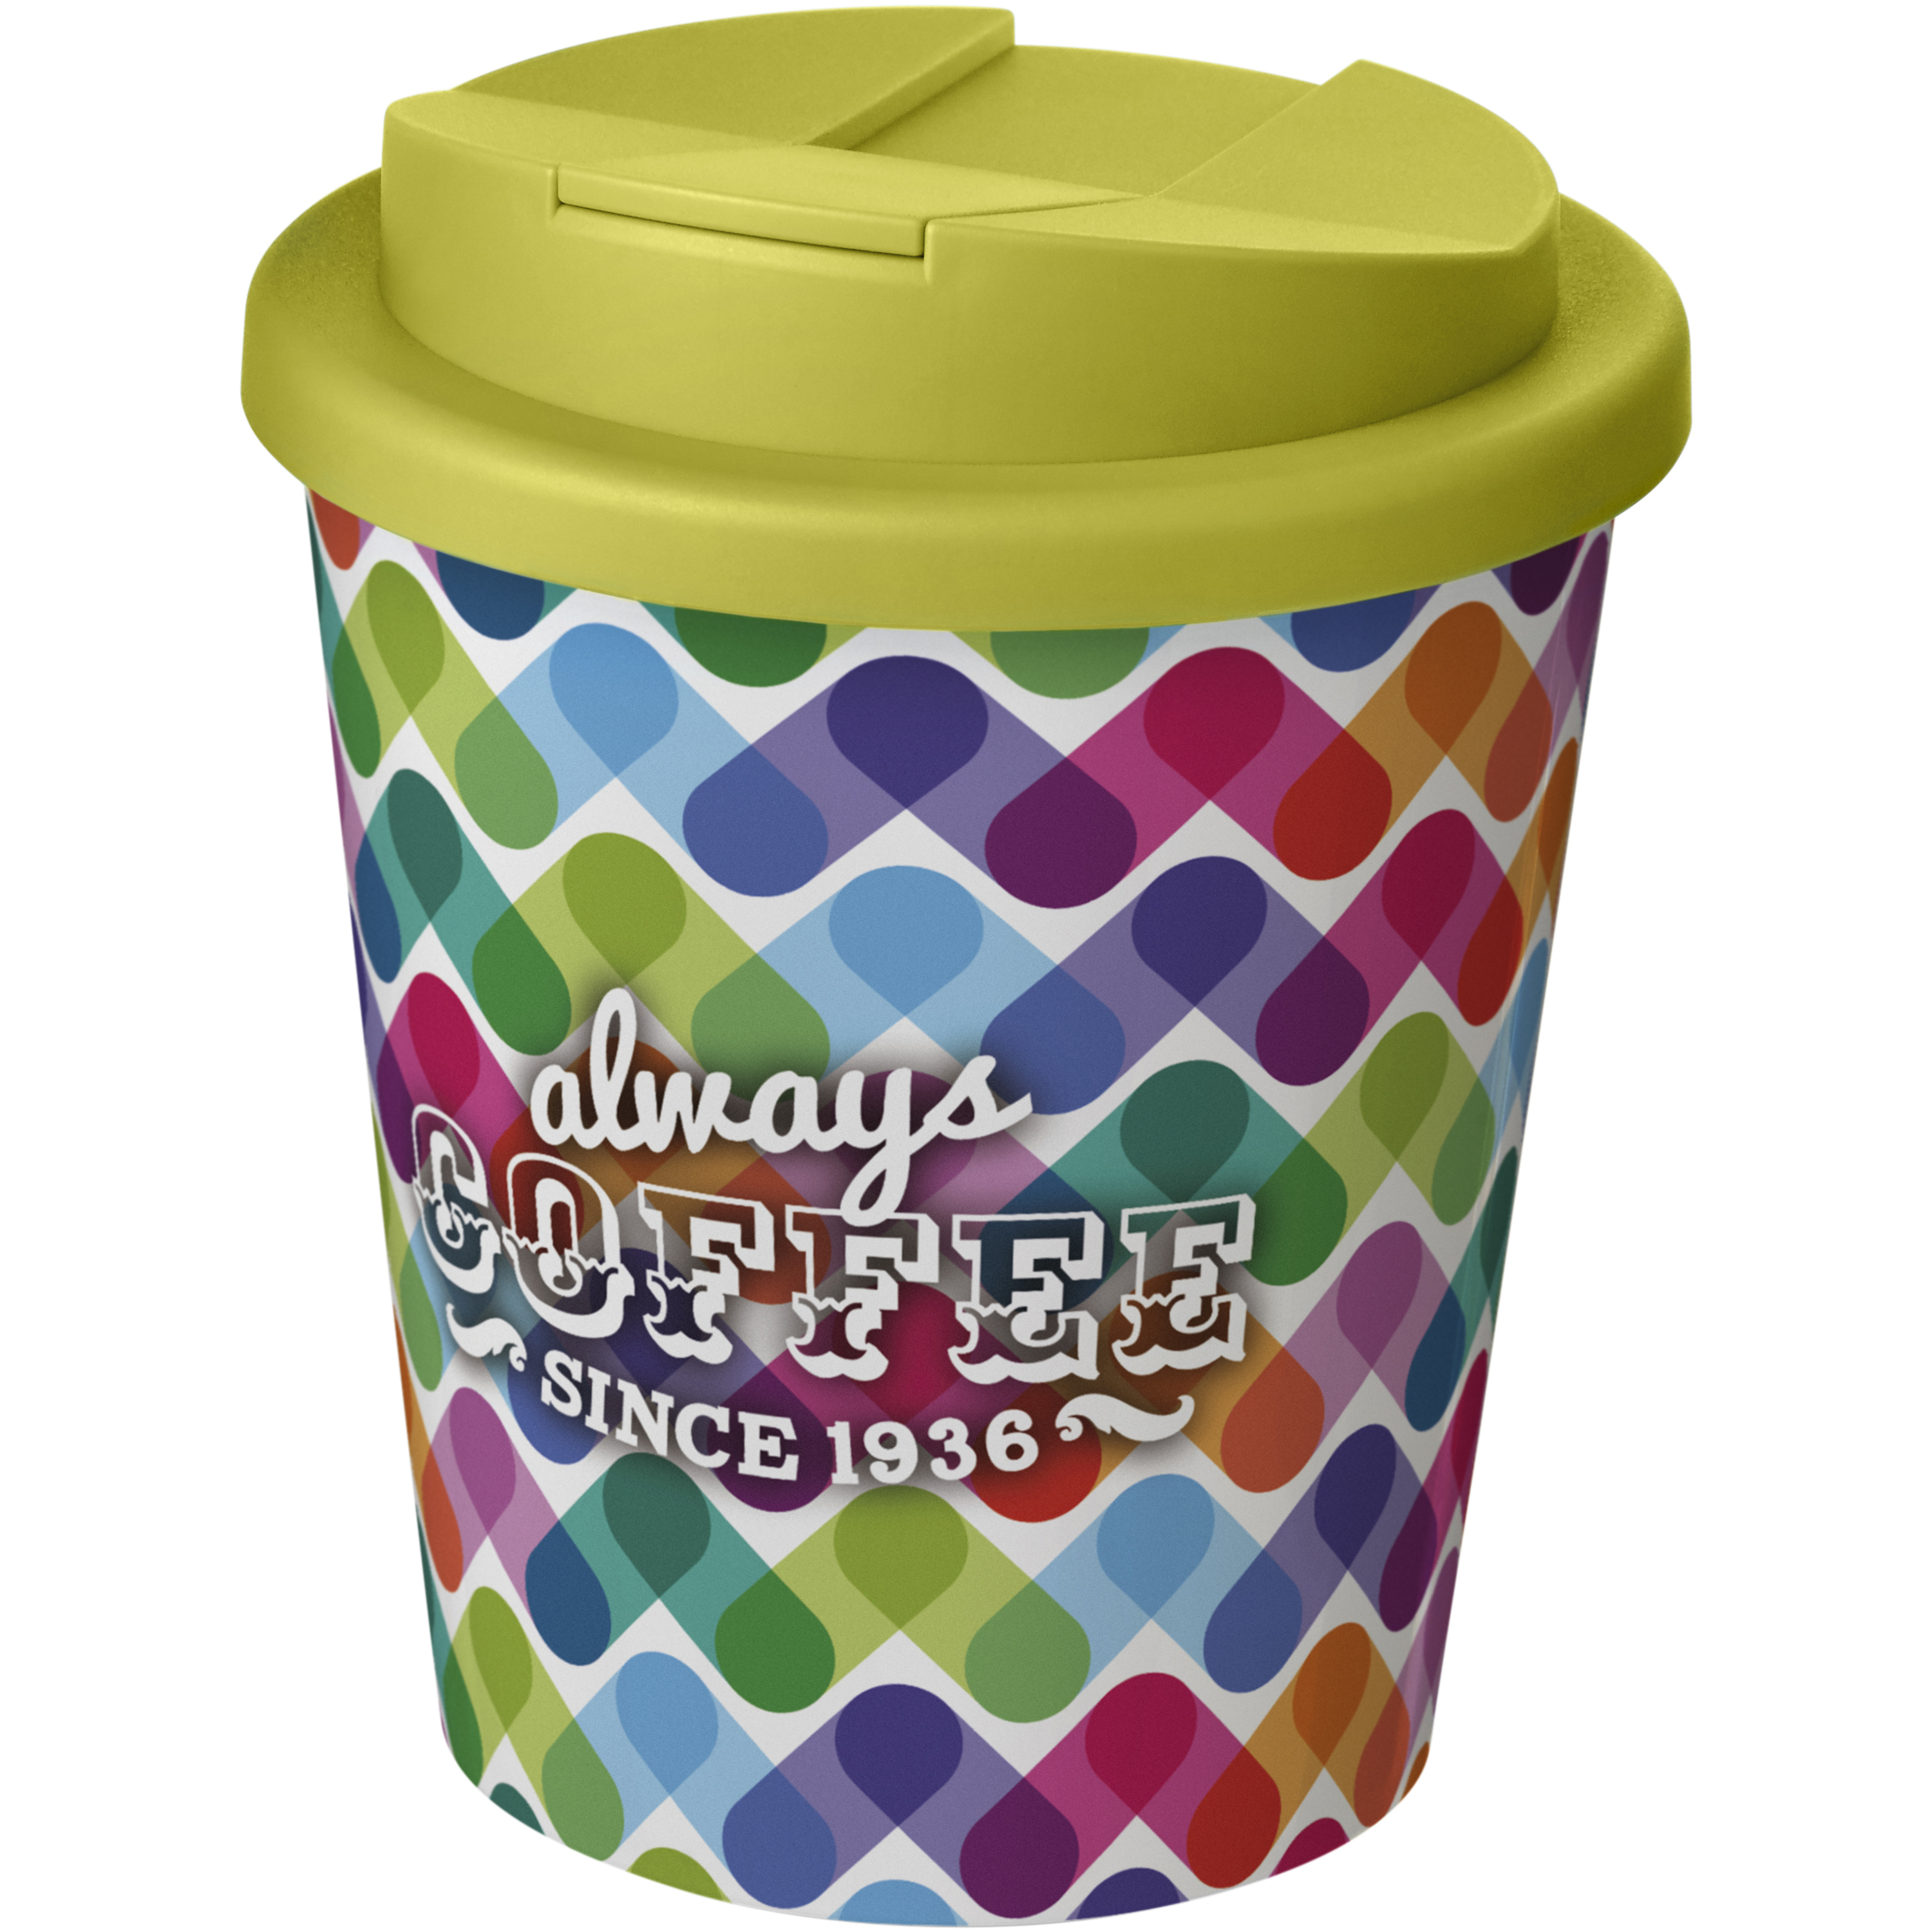 Brite-Americano® Espresso 250 ml tumbler with spill-proof lid